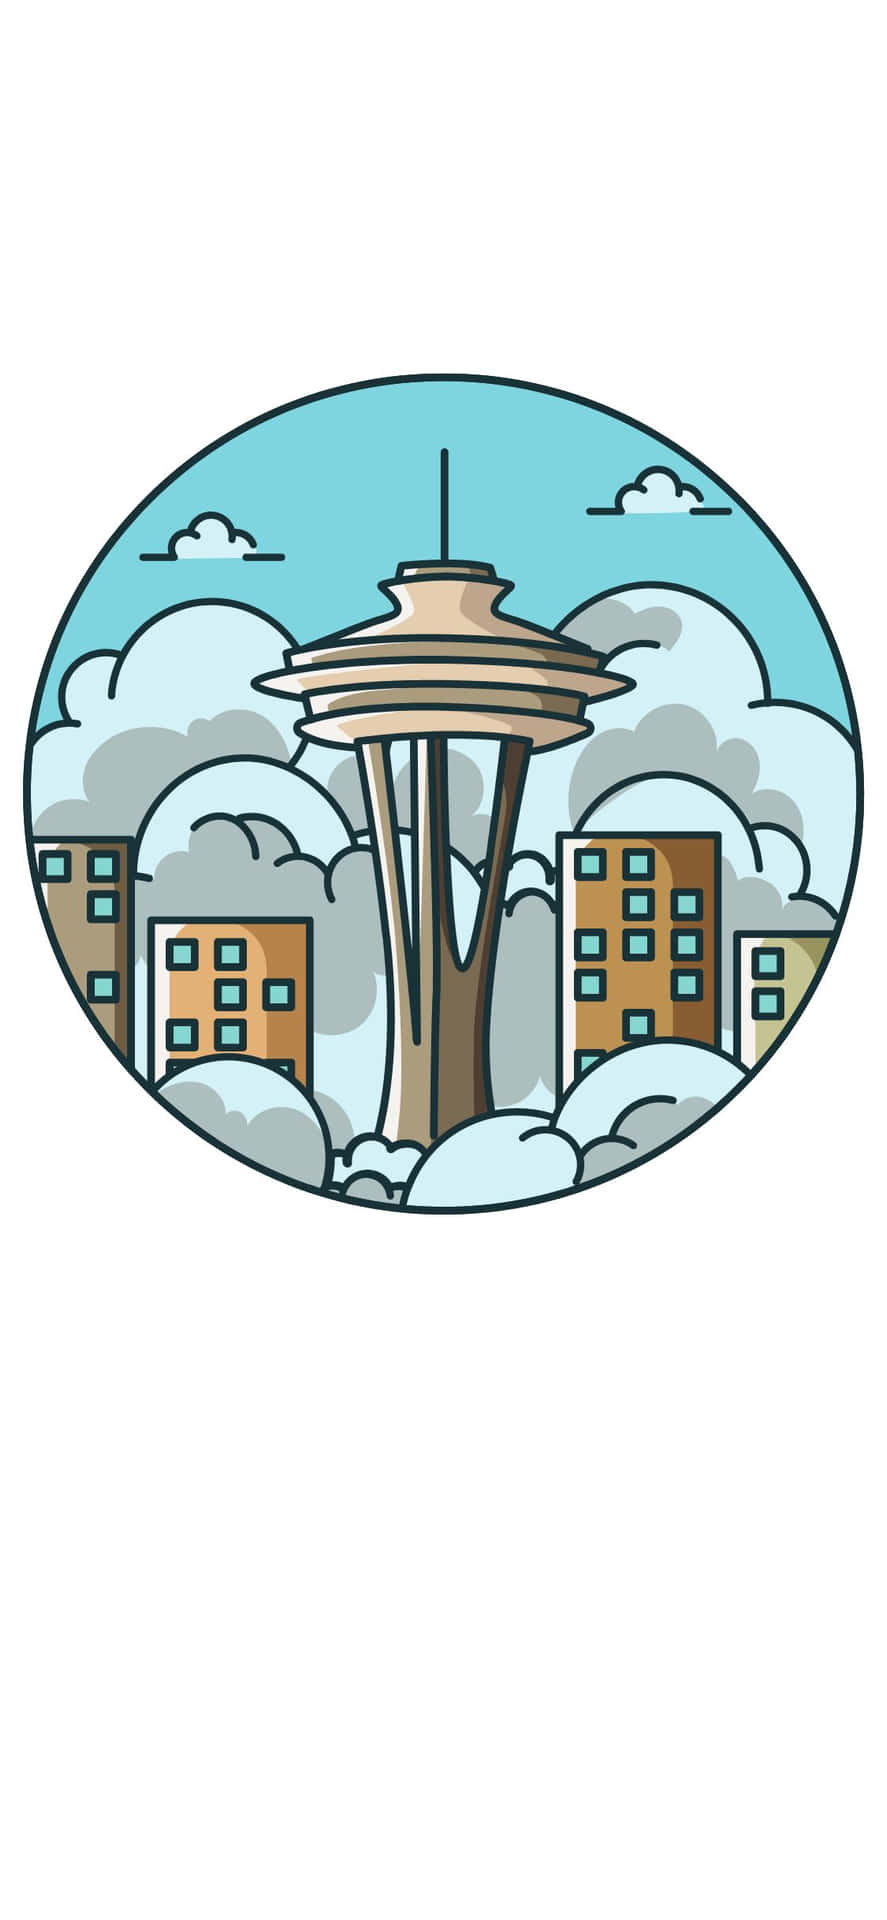 Genießensie Die Schönheit Der Seattle Skyline Während Sie Ihr Iphone X Verwenden.